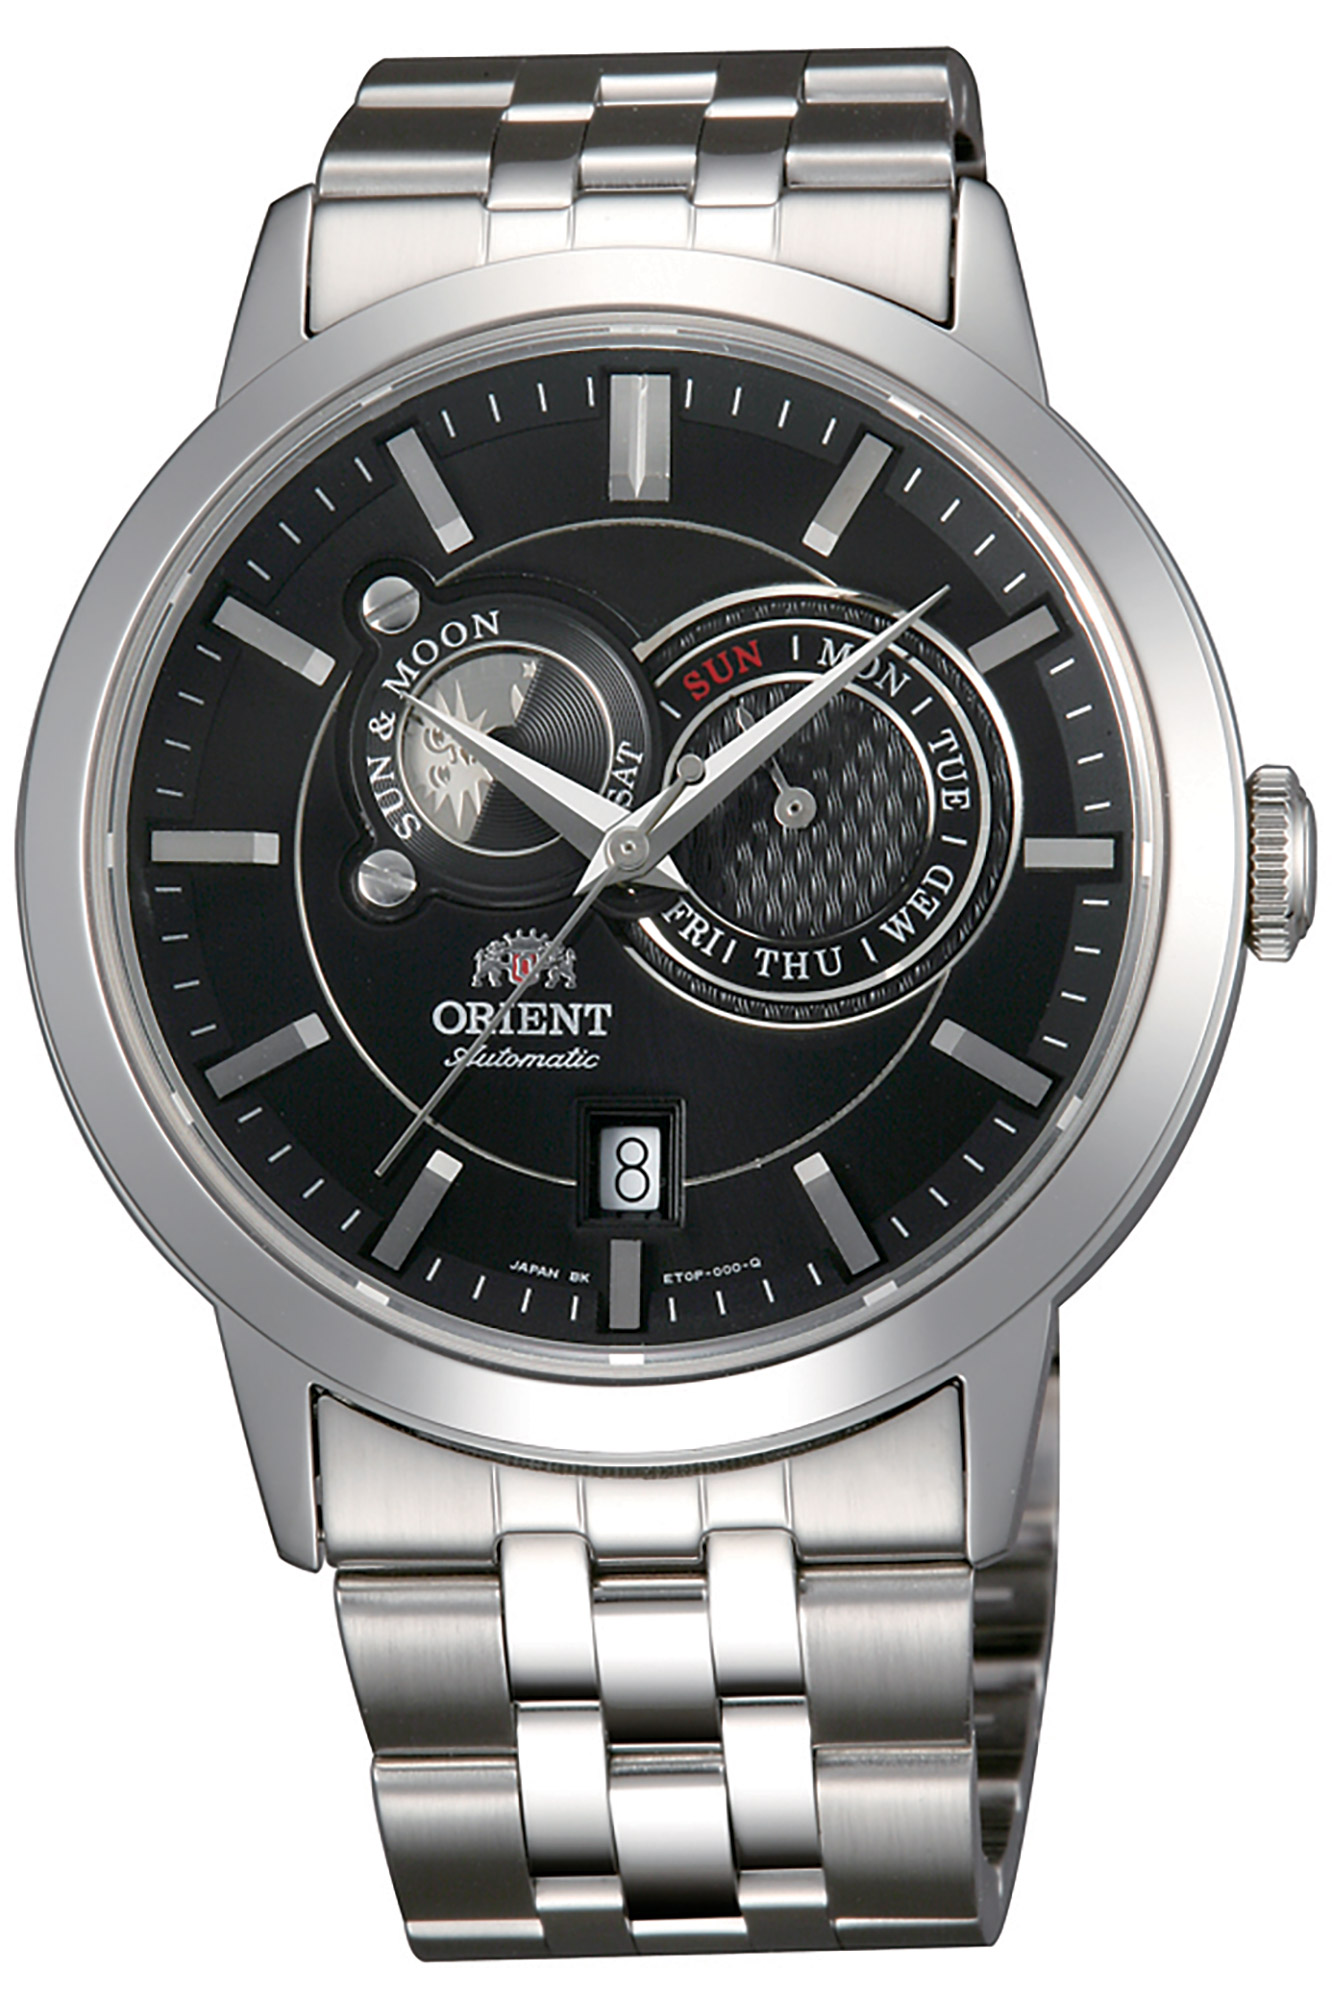 Купить часы ориент механику. Orient et0p002b. Orient Automatic fet0p002b. Часы Orient et0p003b. Orient ra-ar0003l.